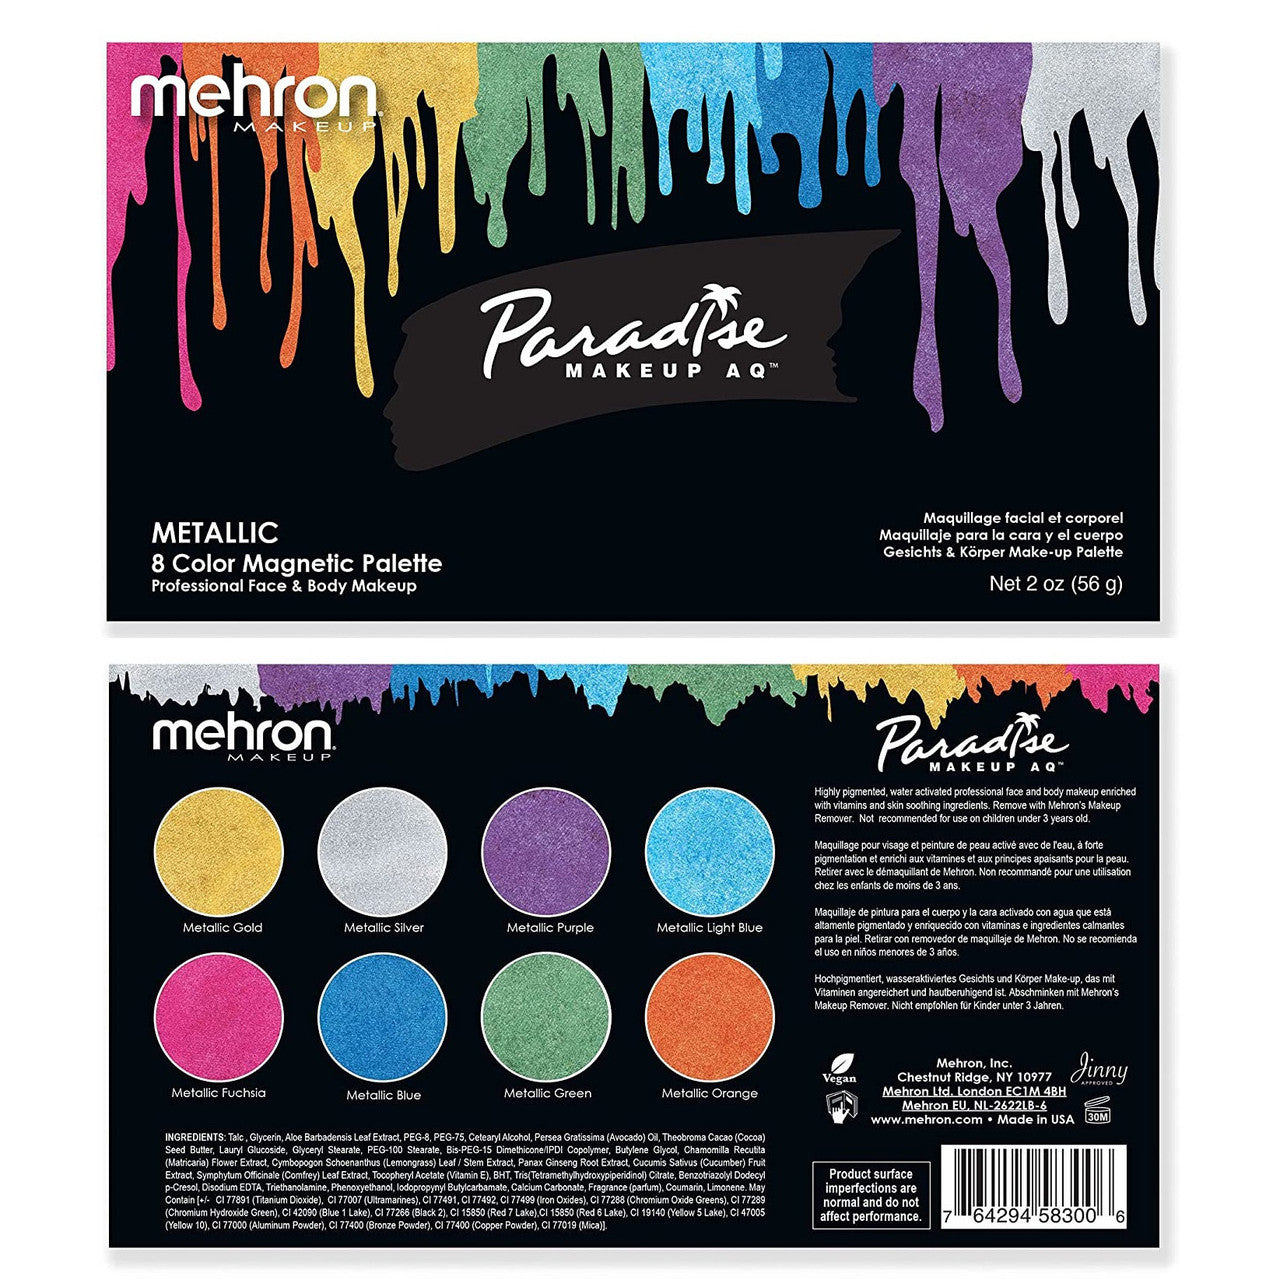 Paradise Makeup AQ™ - 8 Color Magnetic Refillable Palette Brilliant Metallics